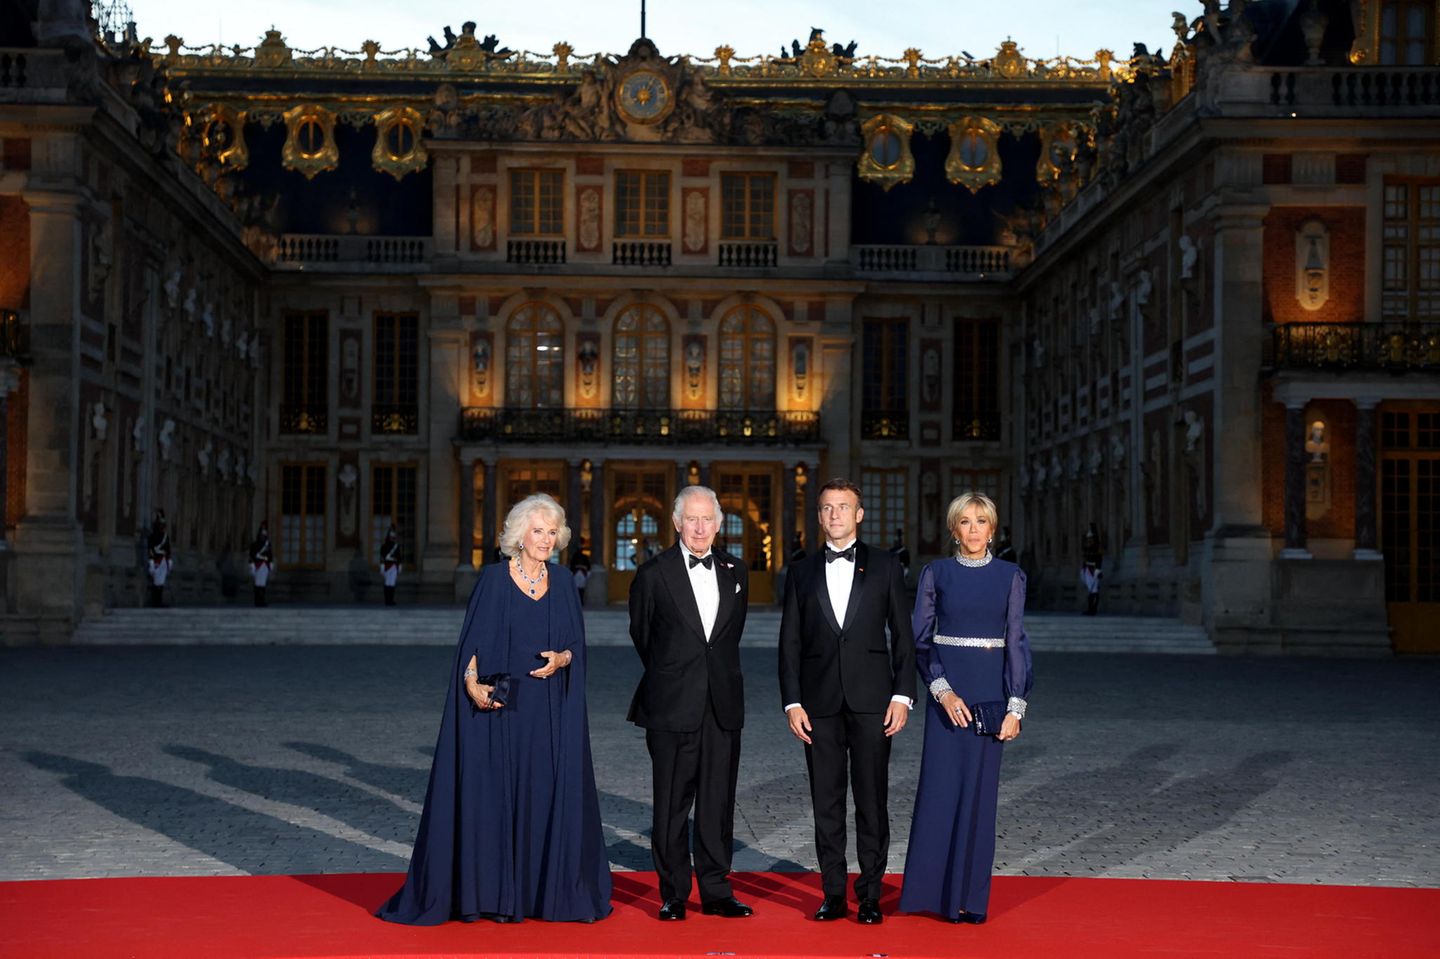 Prunkvolles Aufeinandertreffen im Schloss Versailles! Im Rahmen des Staatsbesuchs des britischen Königspaares in Frankreich zeigen sich Königin Camilla und König Charles gemeinsam mit Emmanuel und Brigitte Macron in glanzvoller Einheit. Während die Männer in klassischen Anzügen kein Risiko eingehen, scheinen sich ihre Frauen miteinander abgesprochen zu haben. In blauen Roben vollenden sie das anmutige Bild und symbolisieren damit auch modisch ihre Zugewandtheit. Clever! So stehlen sie sich gegenseitig nicht die Show. 